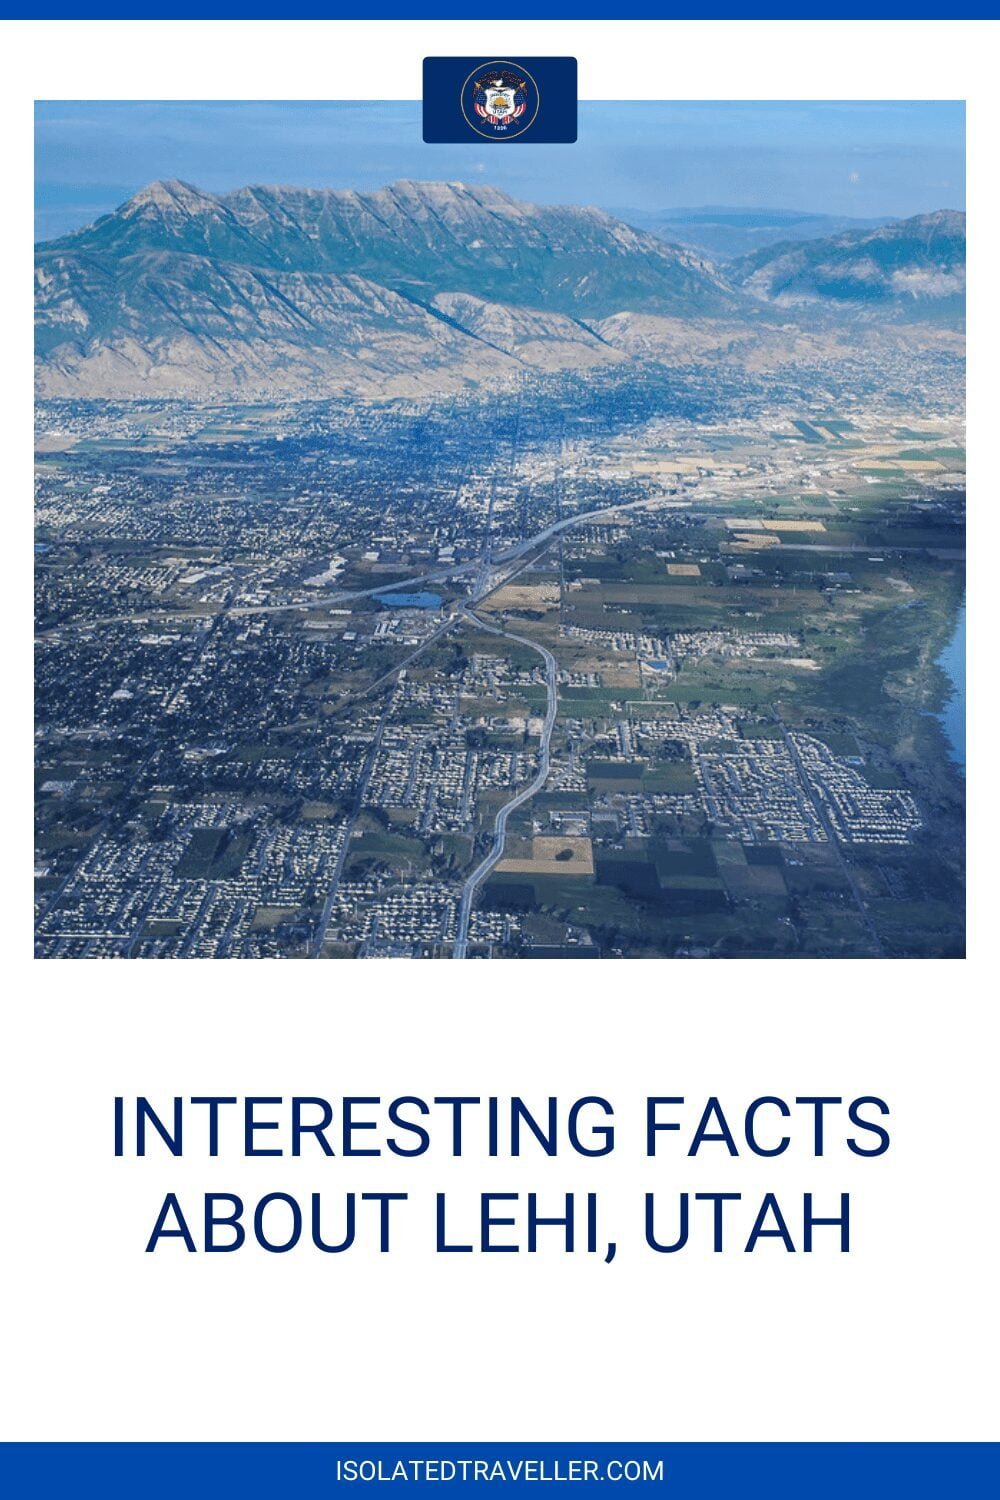 Facts About Lehi, Utah